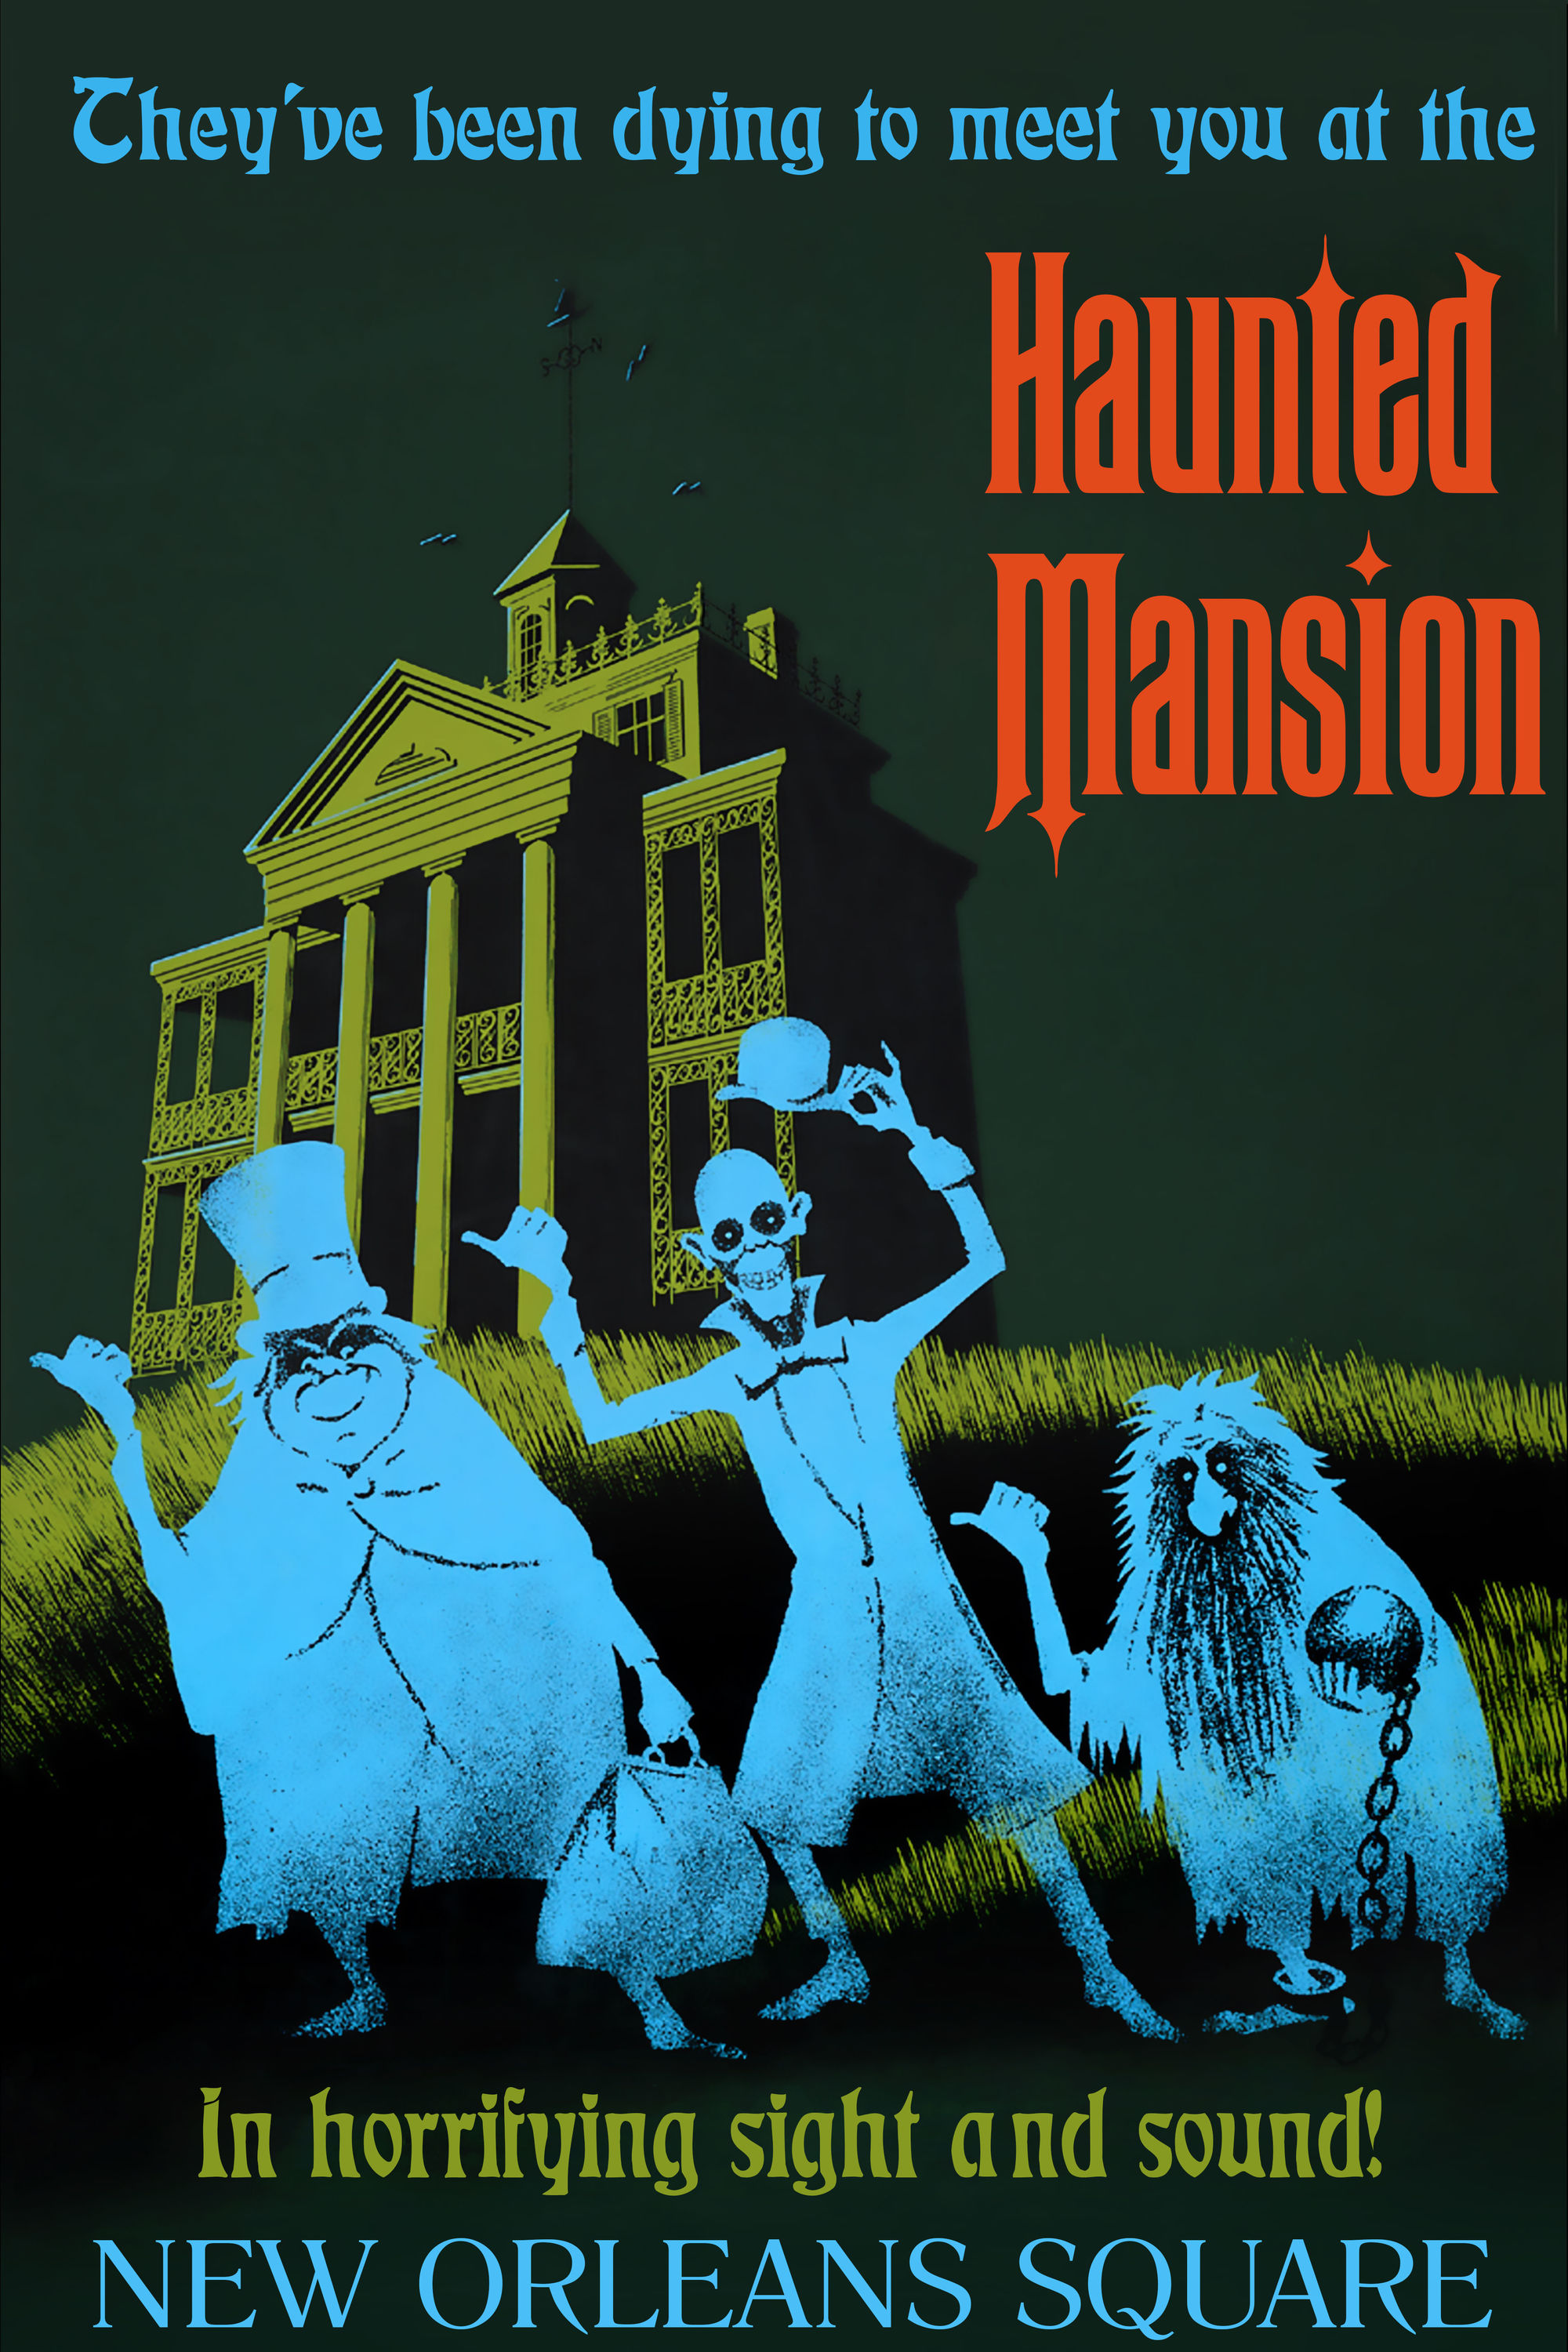 Haunted_Mansion_poster_at_Disneyland_Anaheim